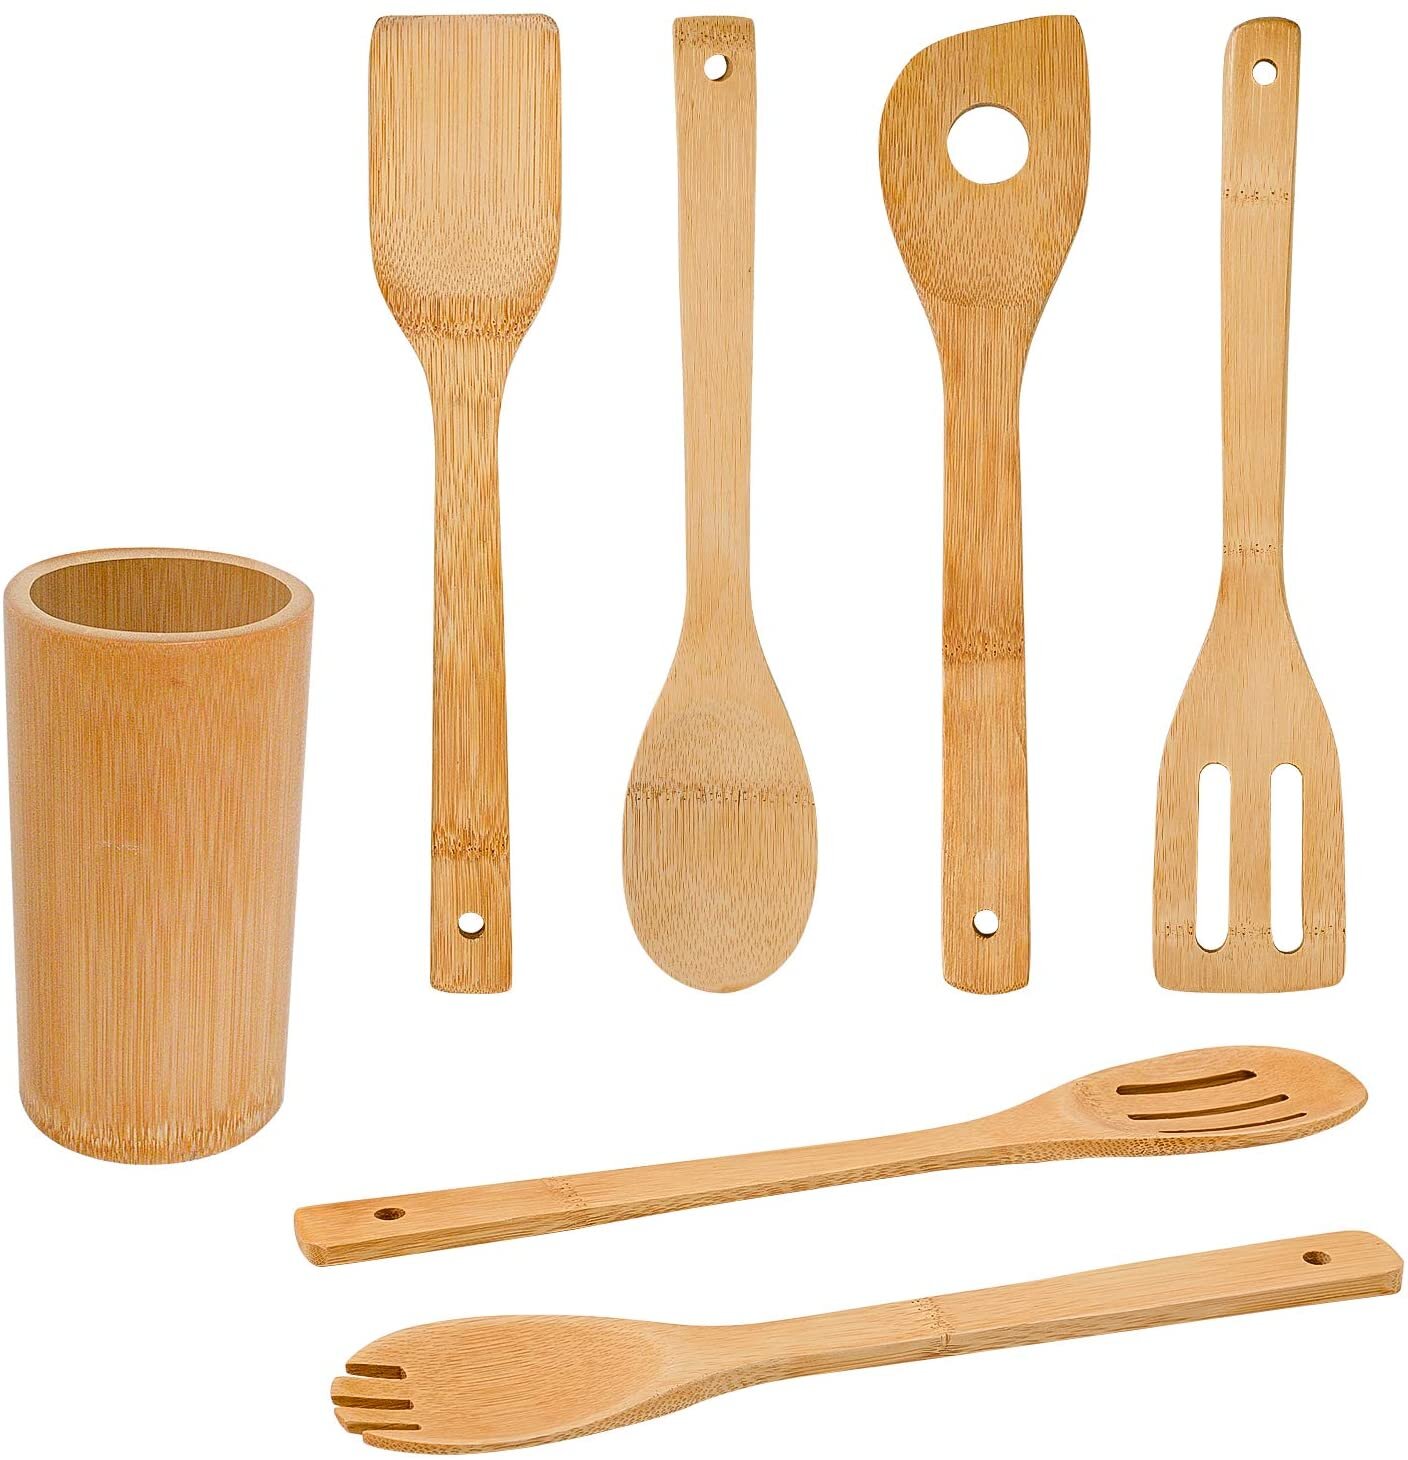 Farberware 5-Pc. Bamboo Utensil Set, Natural